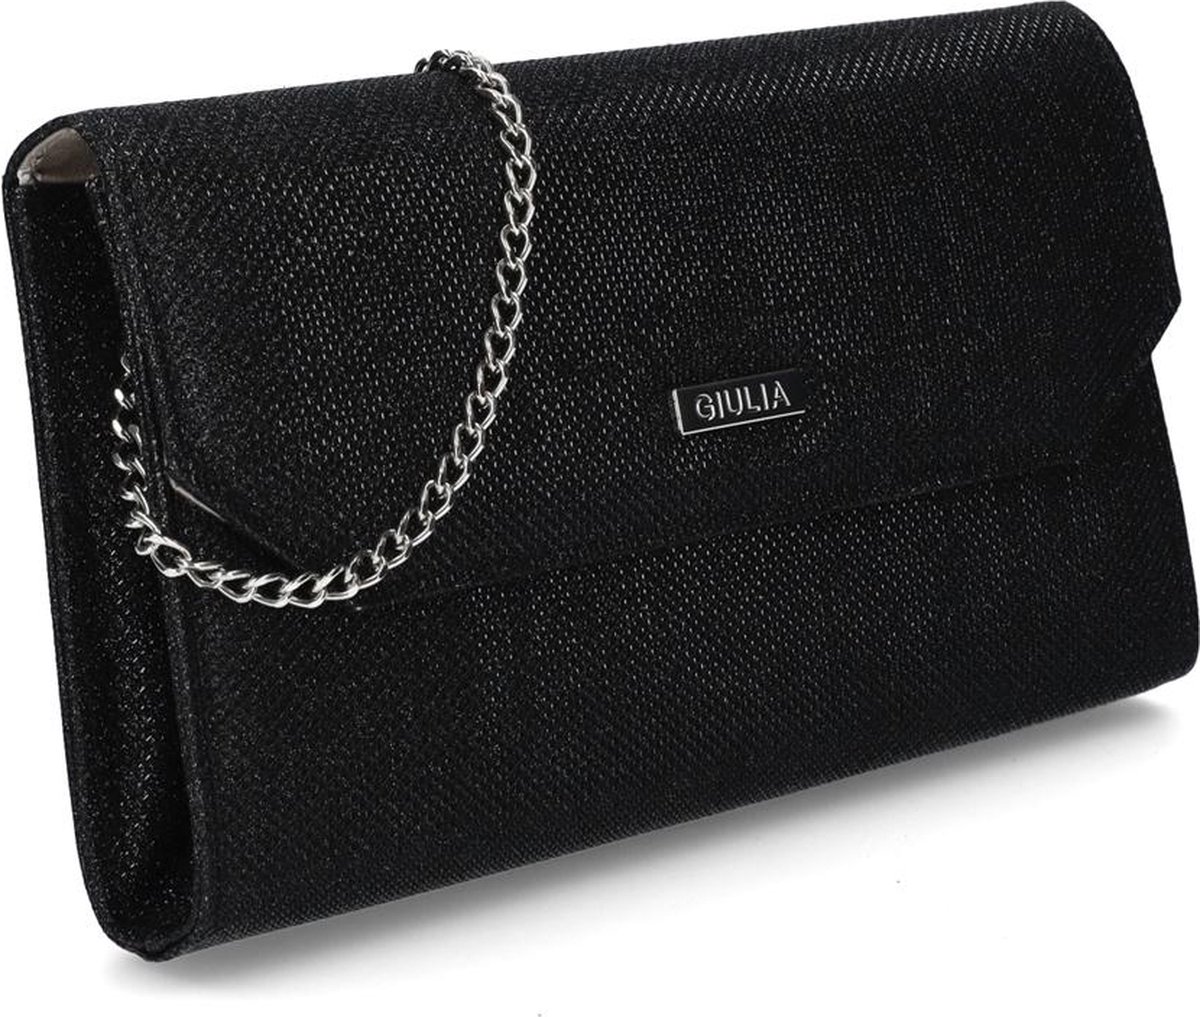 Giulia Clutch handbag handtas galatasje - zwart glitter (zwart paillette)